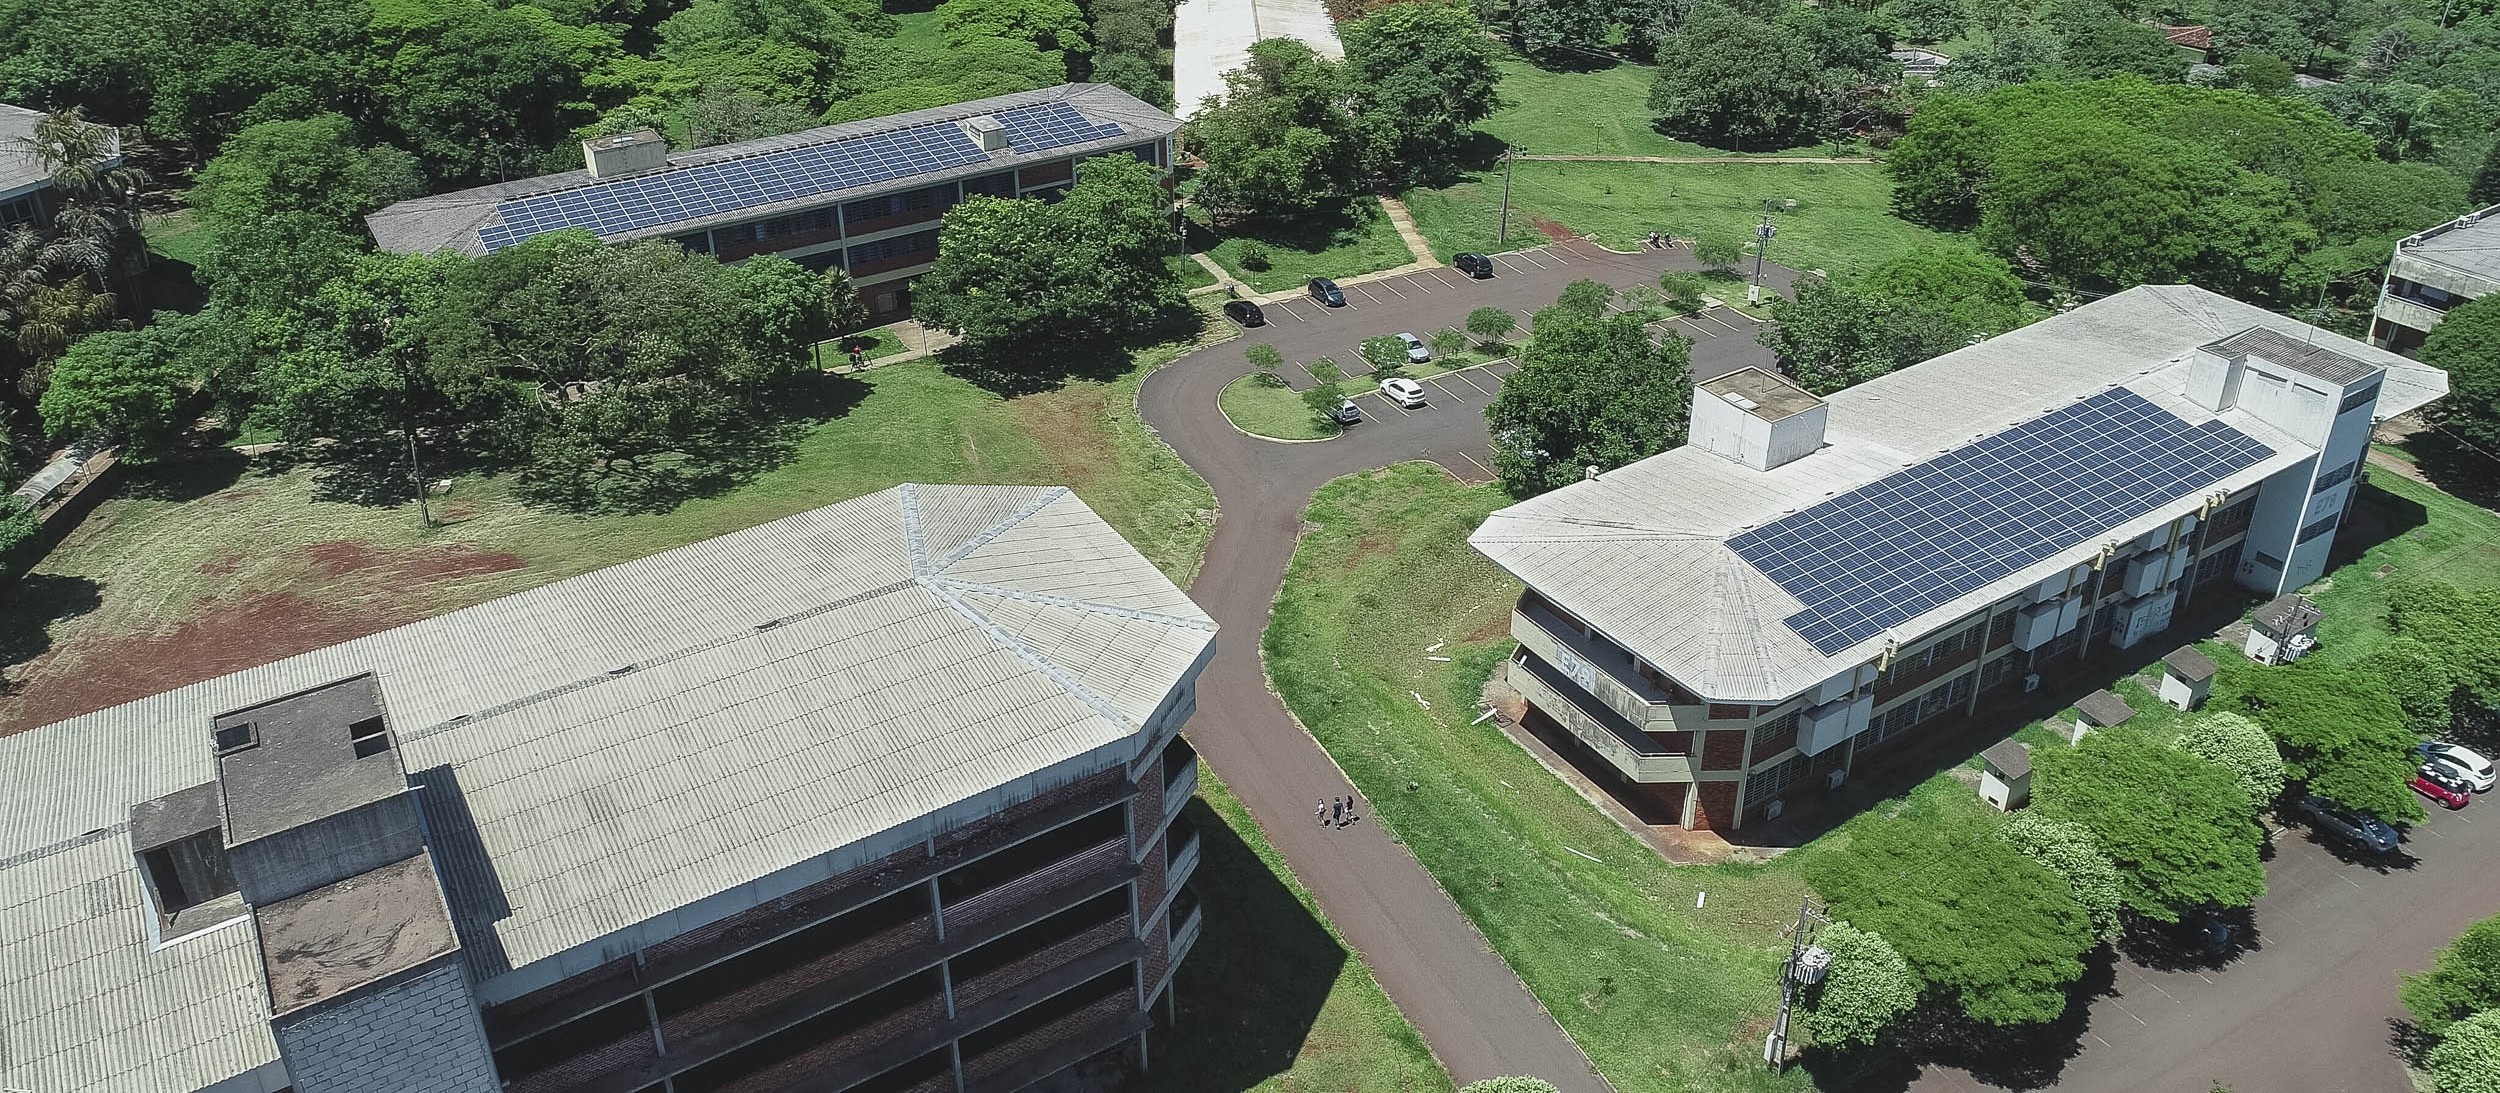 Painéis fotovoltaicos começam a gerar energia no campus da UEM